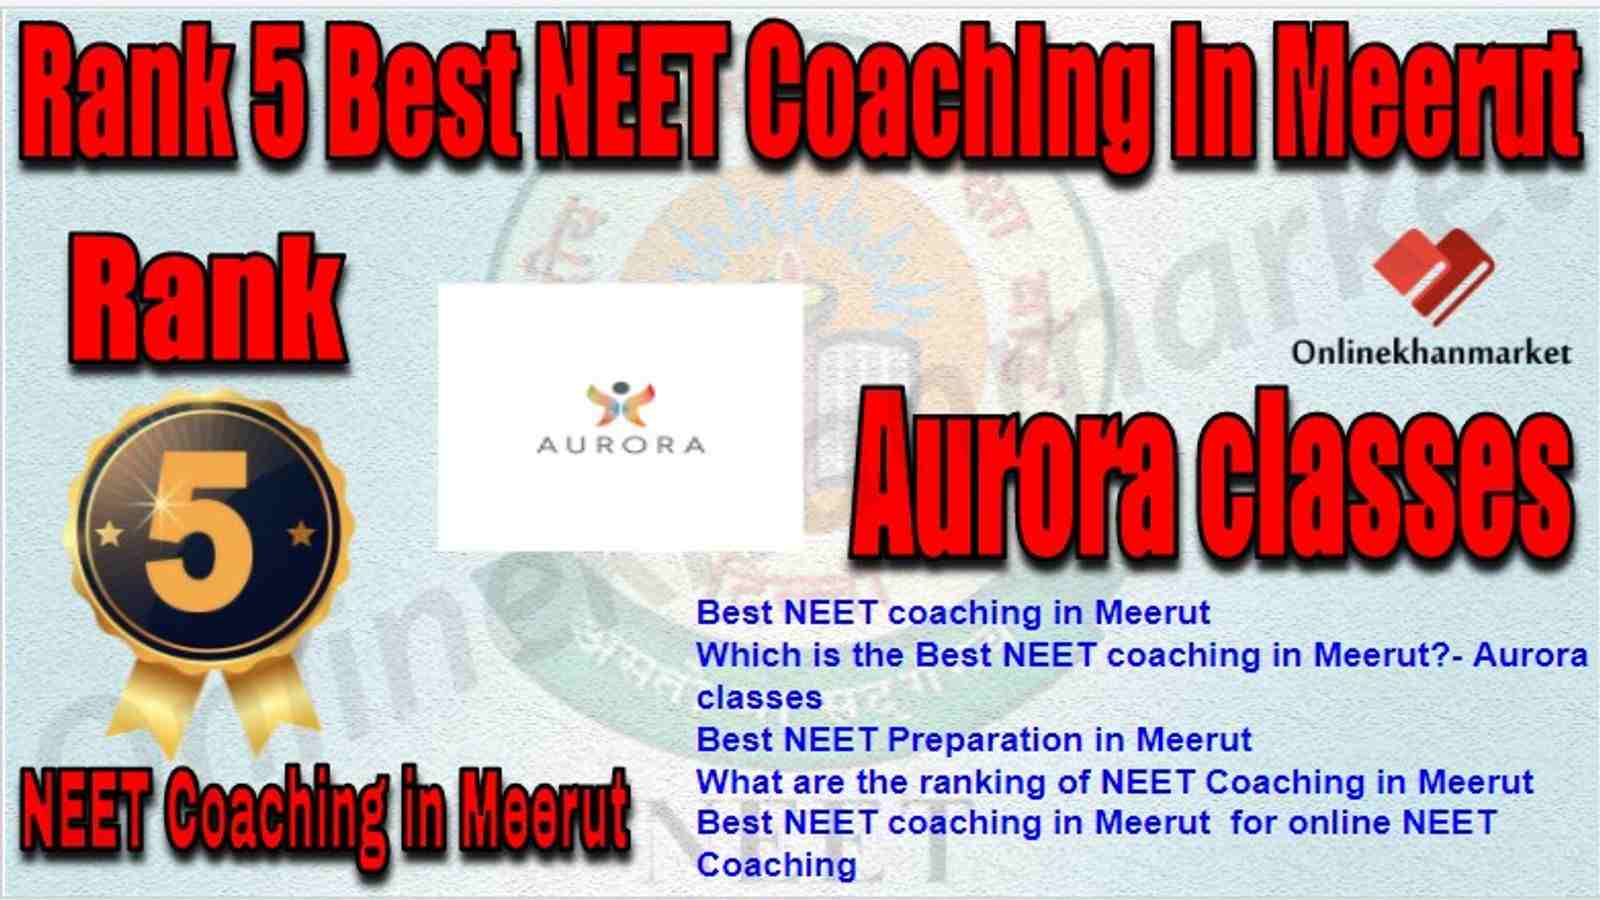 Rank 5 Best NEET Coaching meerut